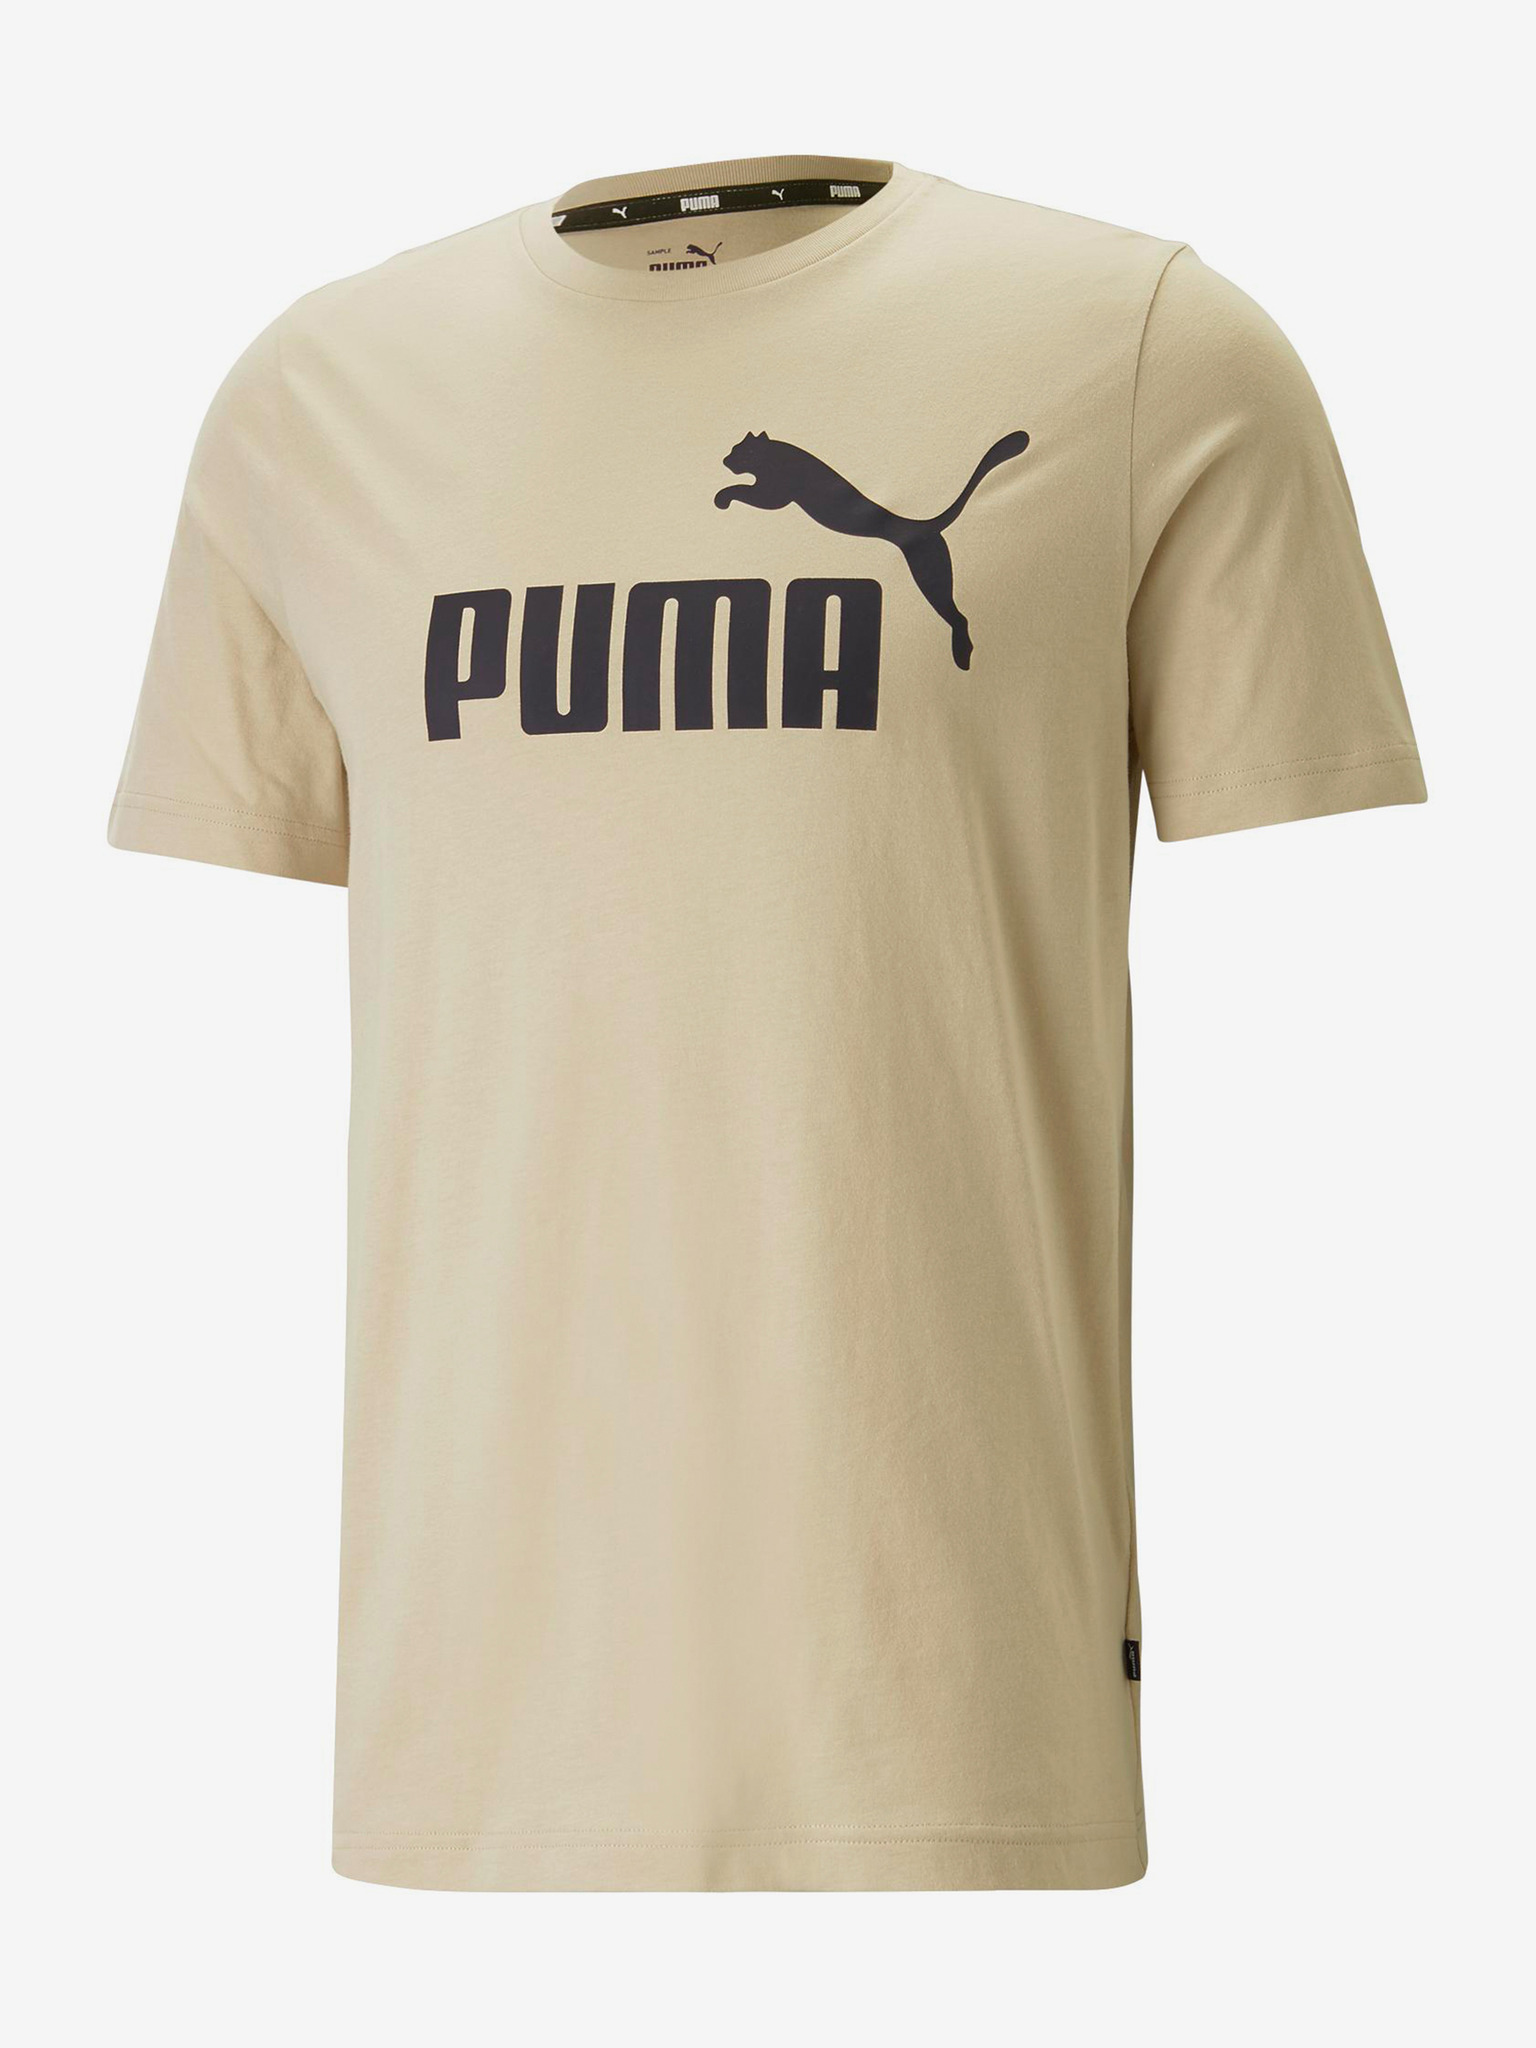 - Puma T-shirt